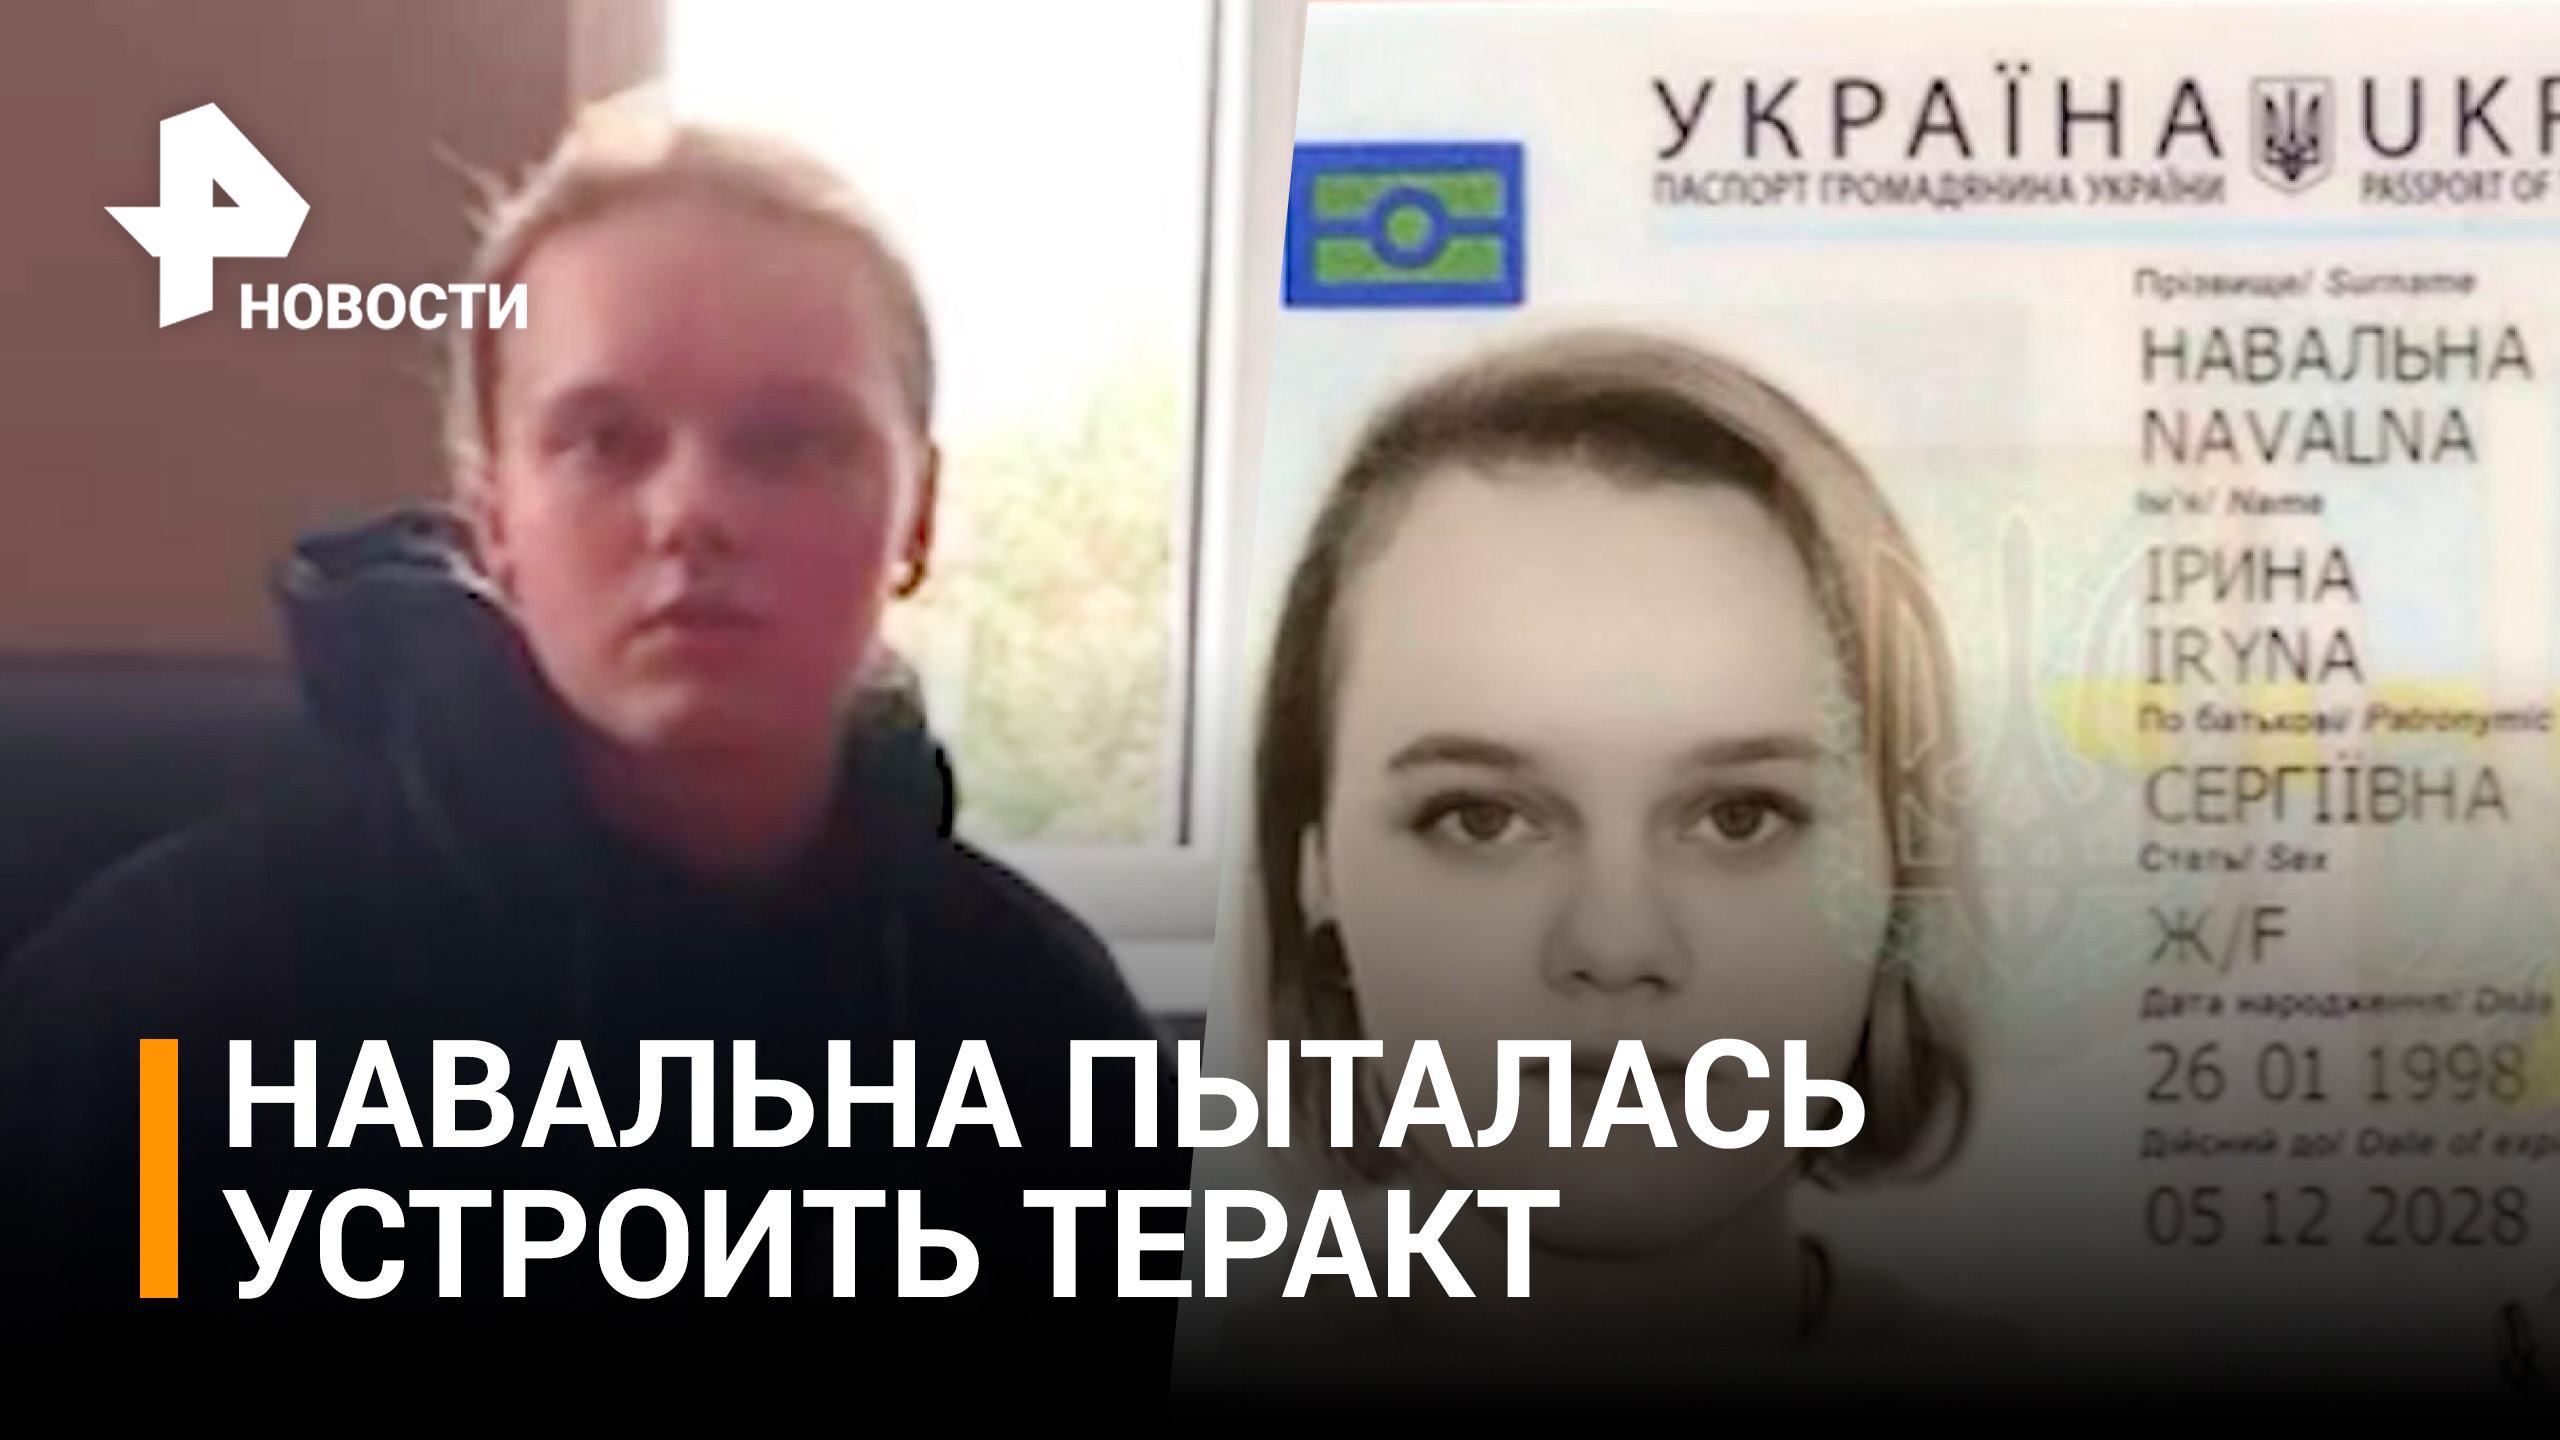 Украинка Навальна пыталась устроить теракт в Мариуполе / РЕН Новости